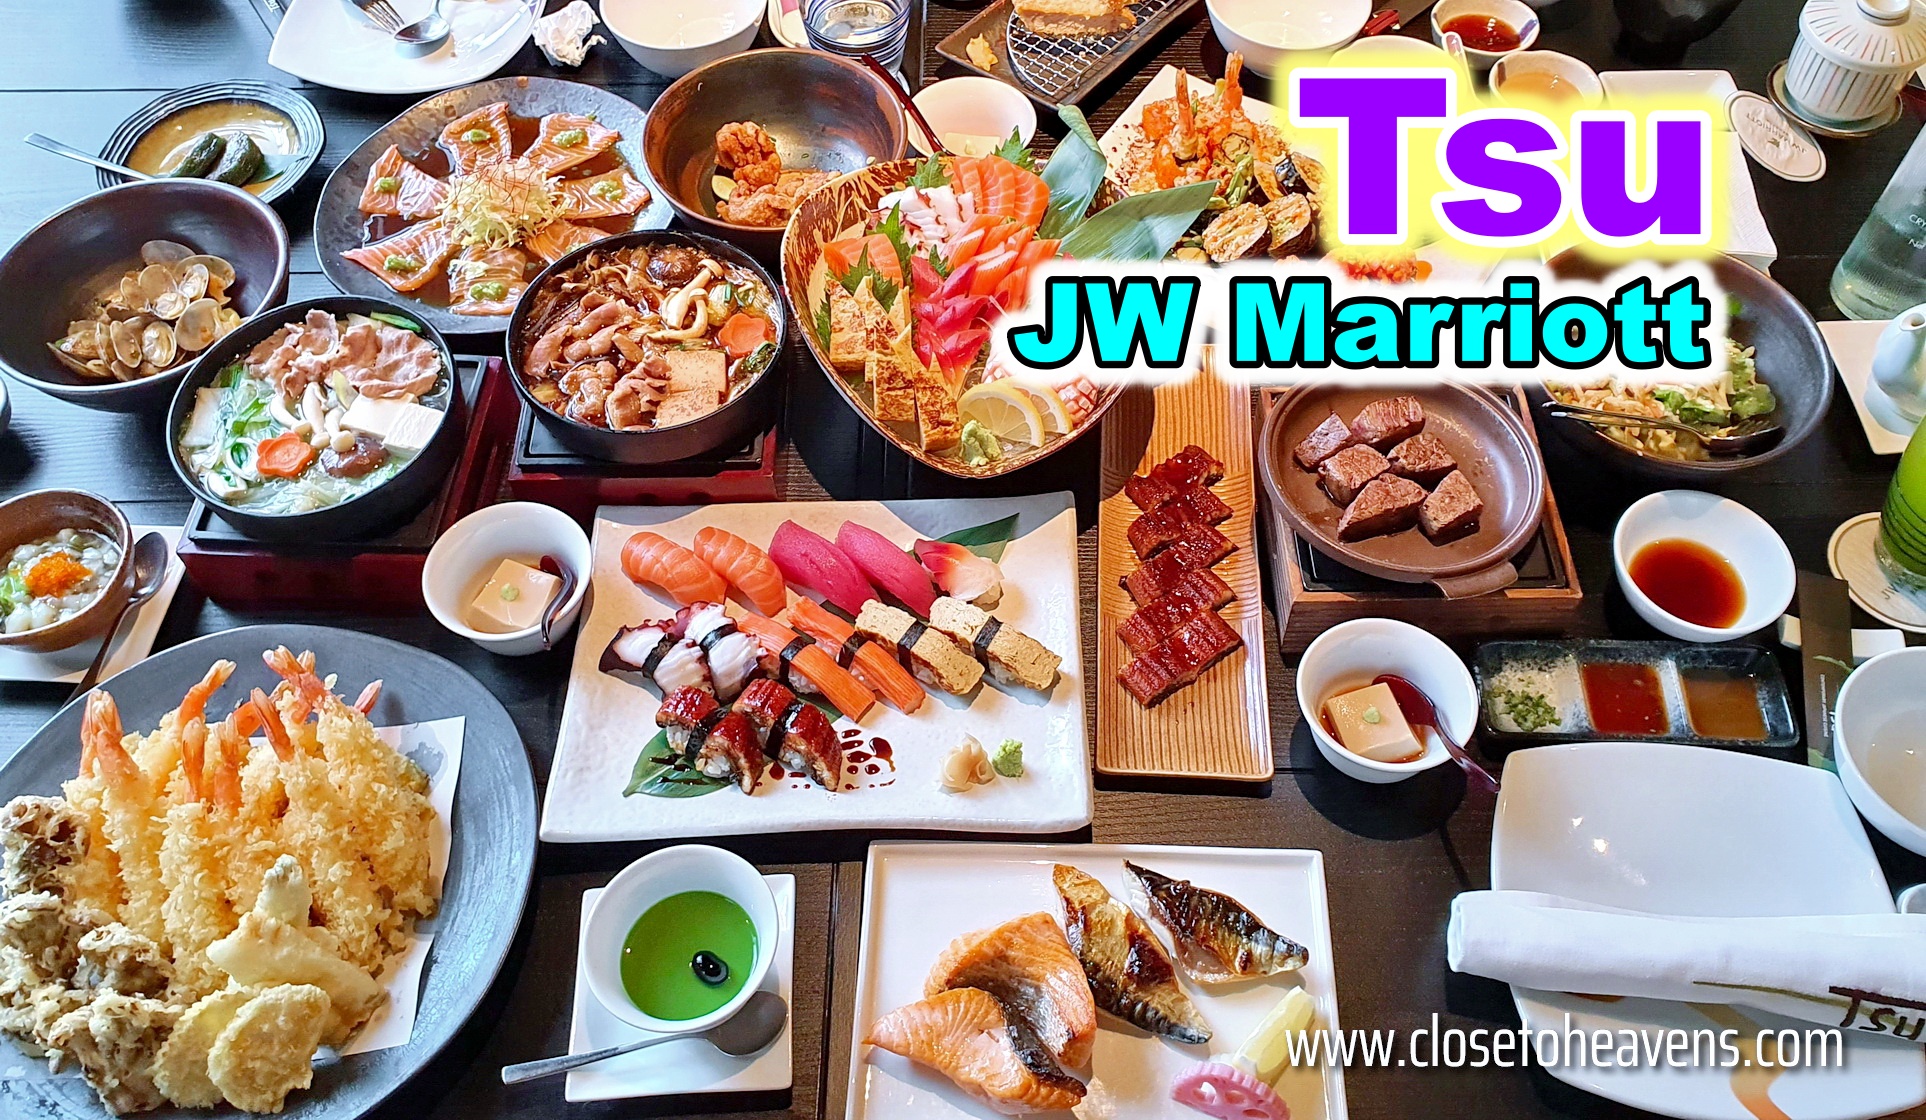 Tsu Japanese Weekend Brunch Buffet @ JW Marriott